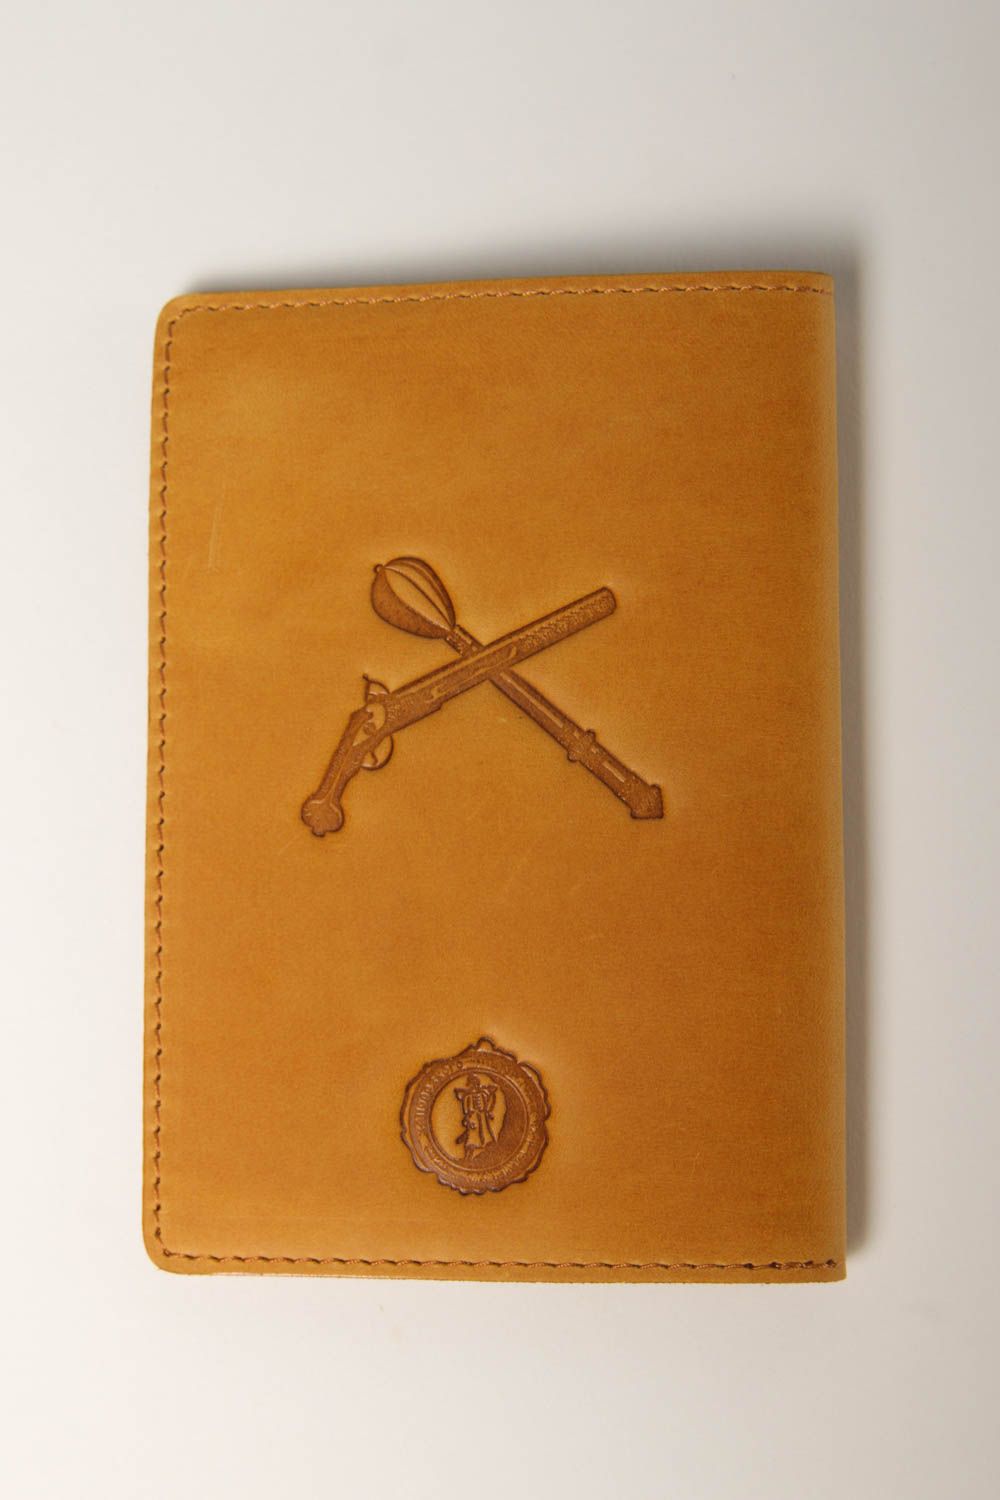 Unusual handmade passport cover leather passport cover handmade gifts photo 3